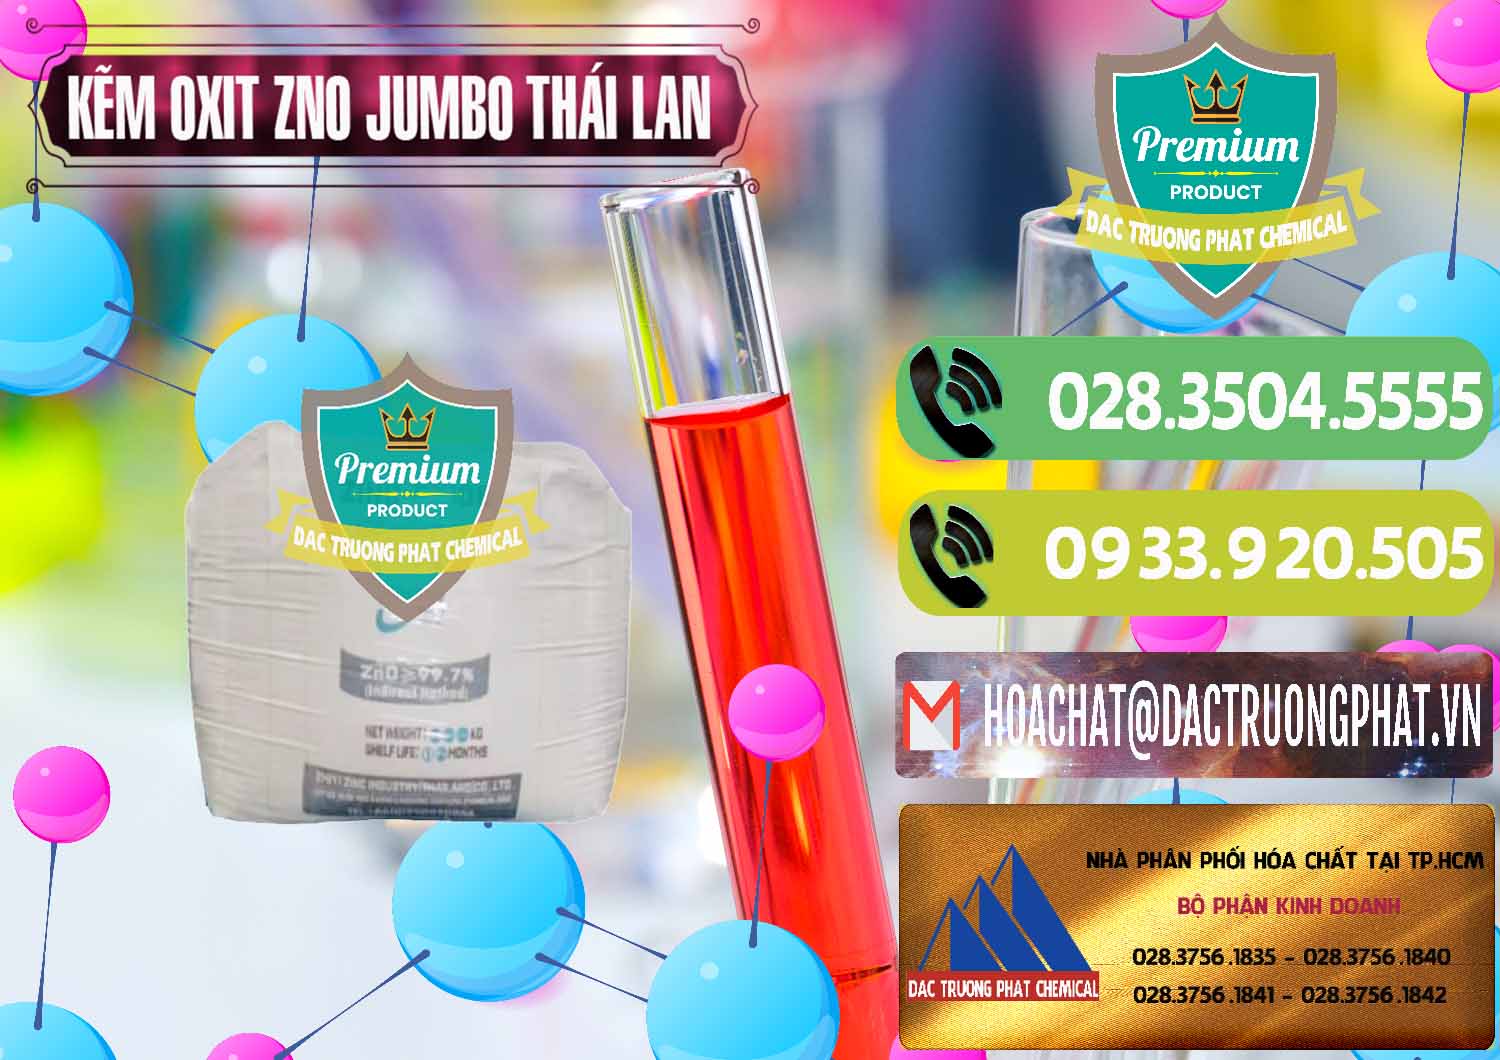 Đơn vị chuyên cung ứng & bán Zinc Oxide - Bột Kẽm Oxit ZNO Jumbo Bành Thái Lan Thailand - 0370 - Cty cung ứng & phân phối hóa chất tại TP.HCM - hoachatmientay.vn